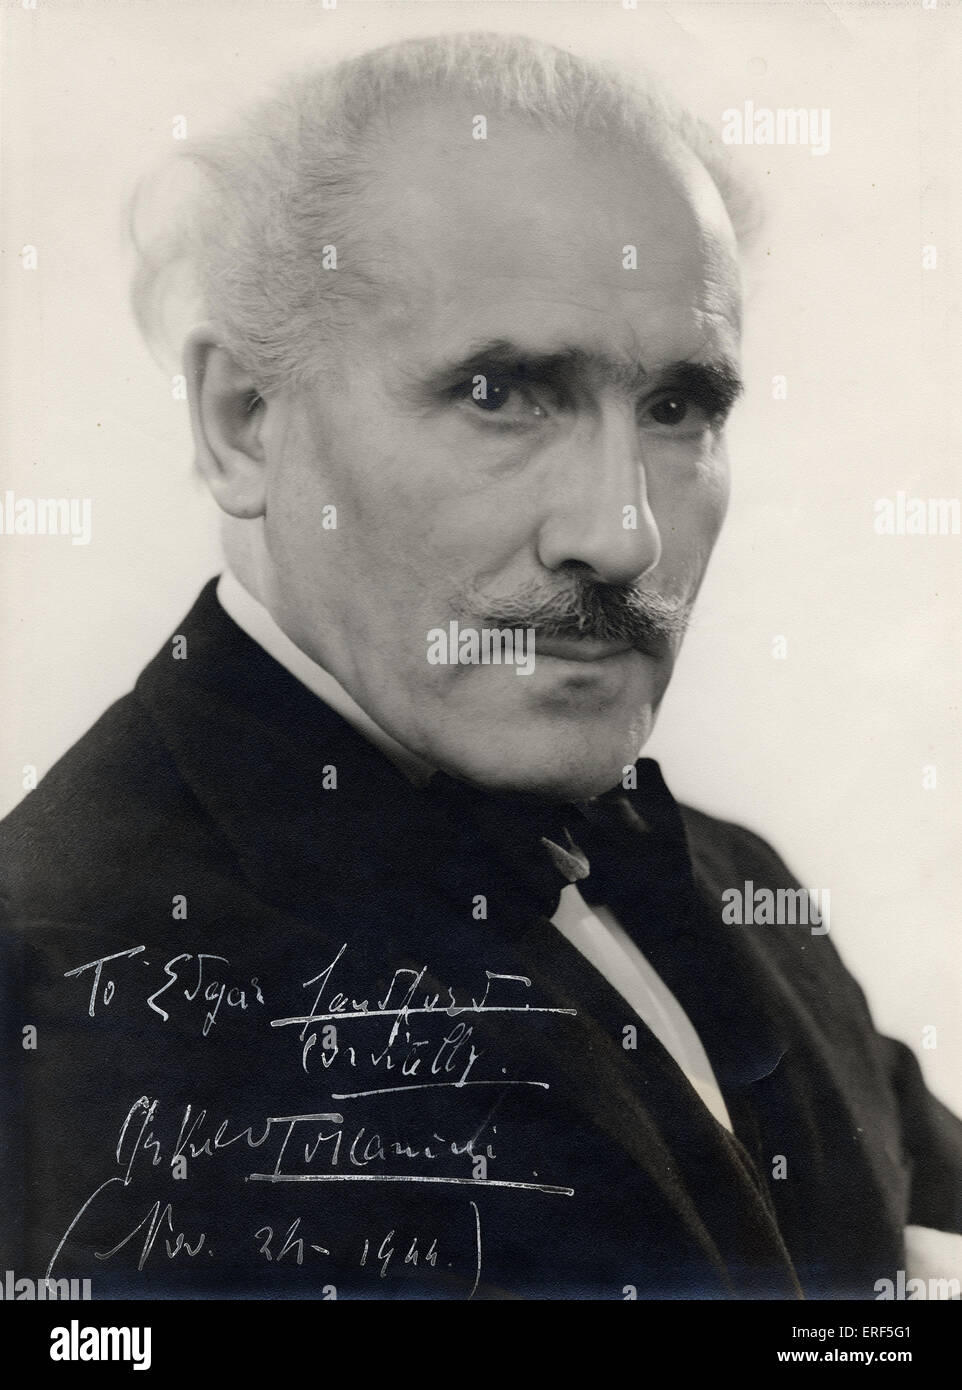 TOSCANINI Arturo - firmato fotografia, 1944 conduttore Italiano, 1867-1957 firmato Foto Stock